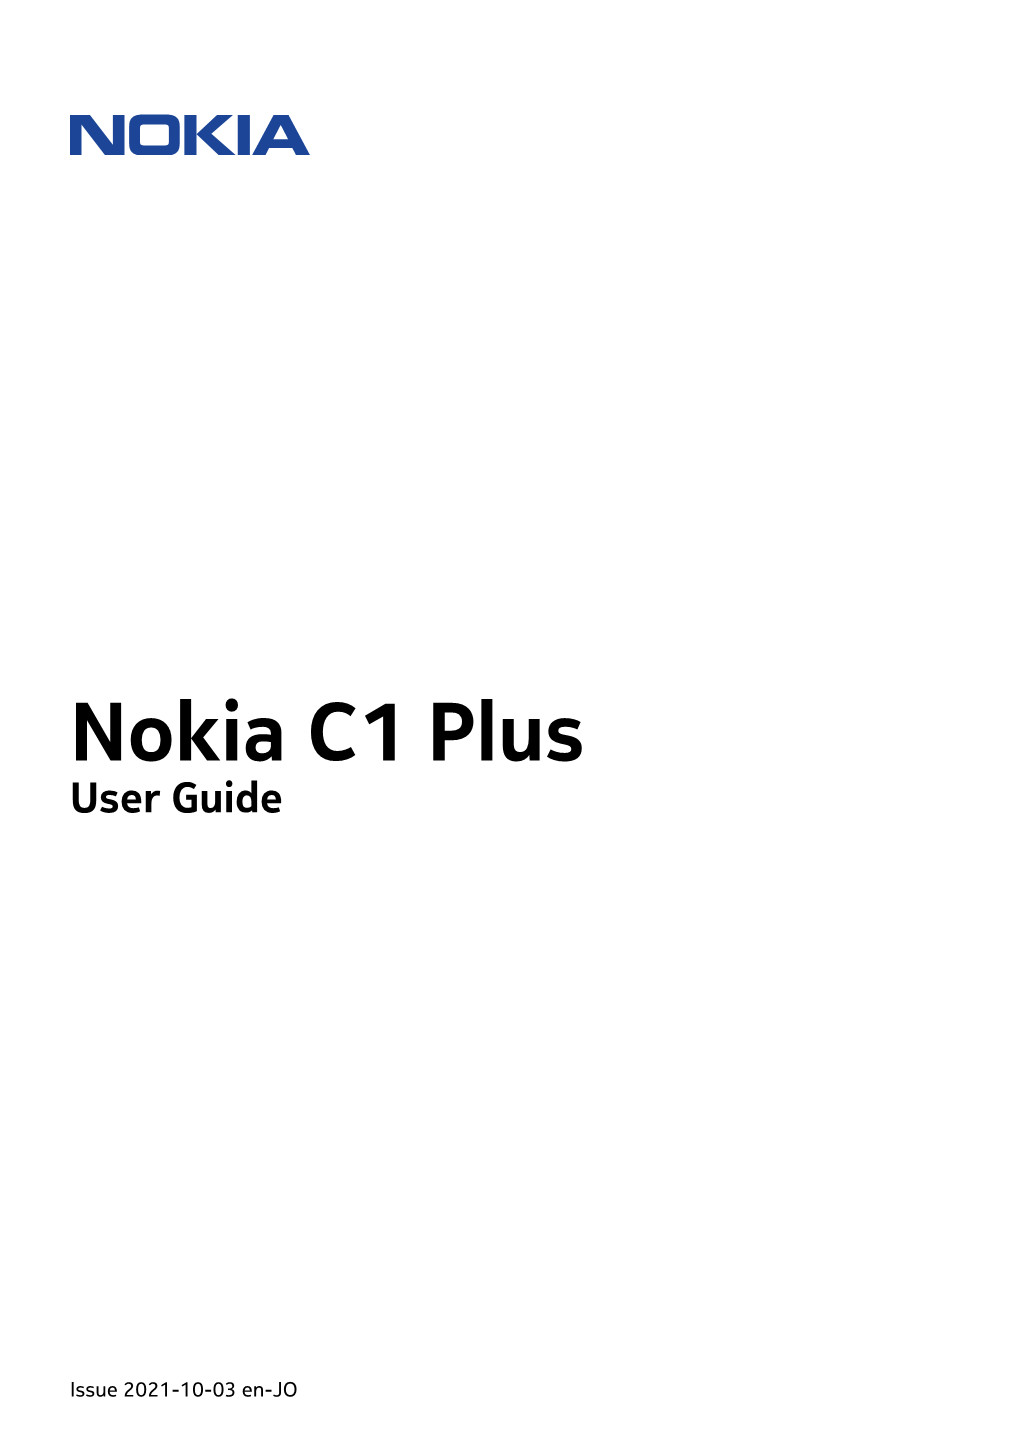 Nokia C1 Plus User Guide